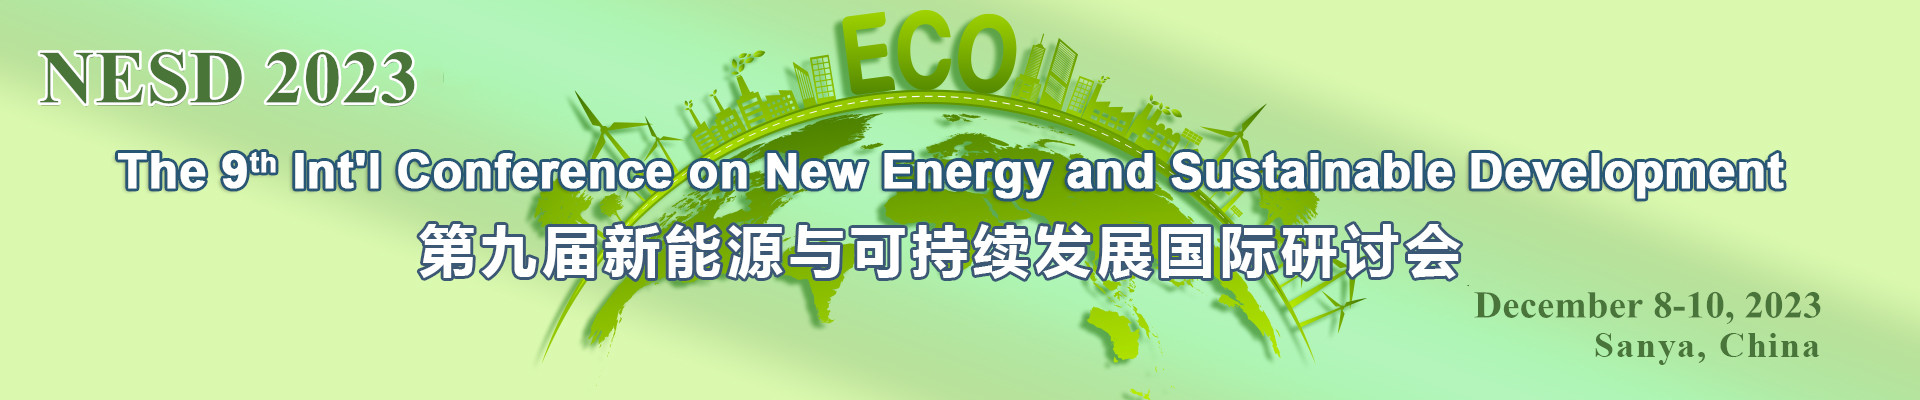 第九届新能源与可持续发展研讨会(NESD 2023)